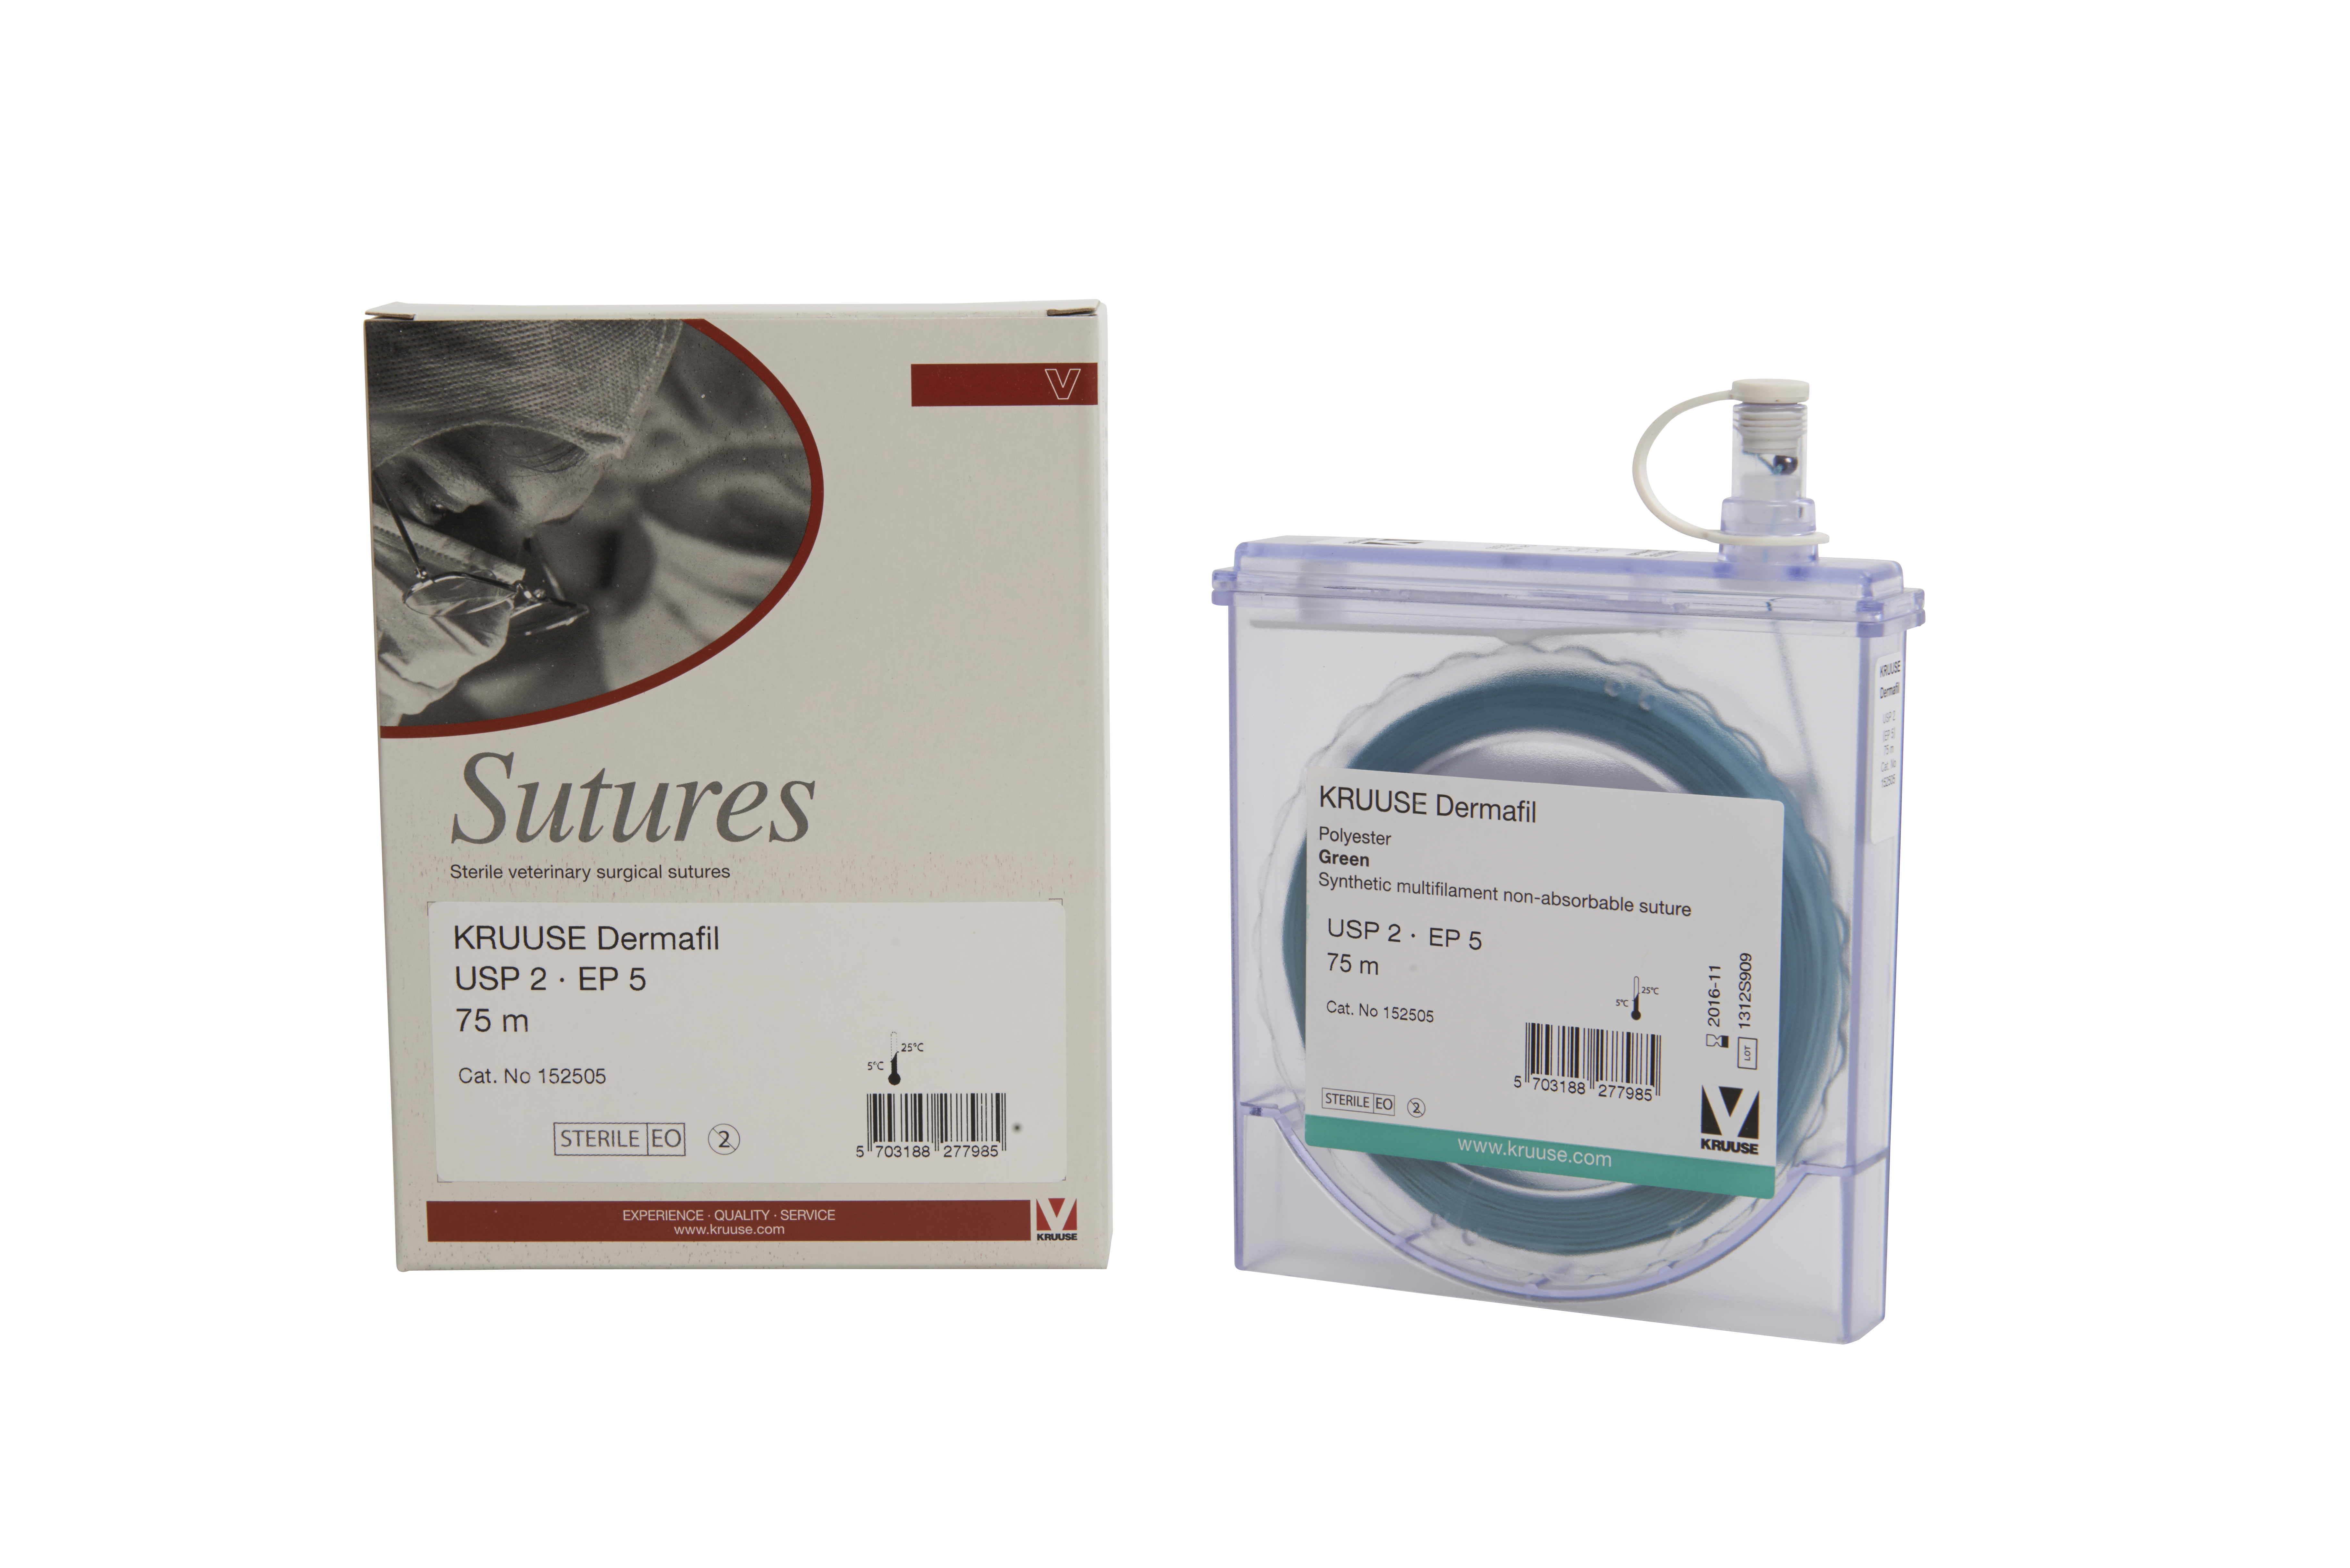 KRUUSE Dermafil suture, USP 2, EP 5, 75m